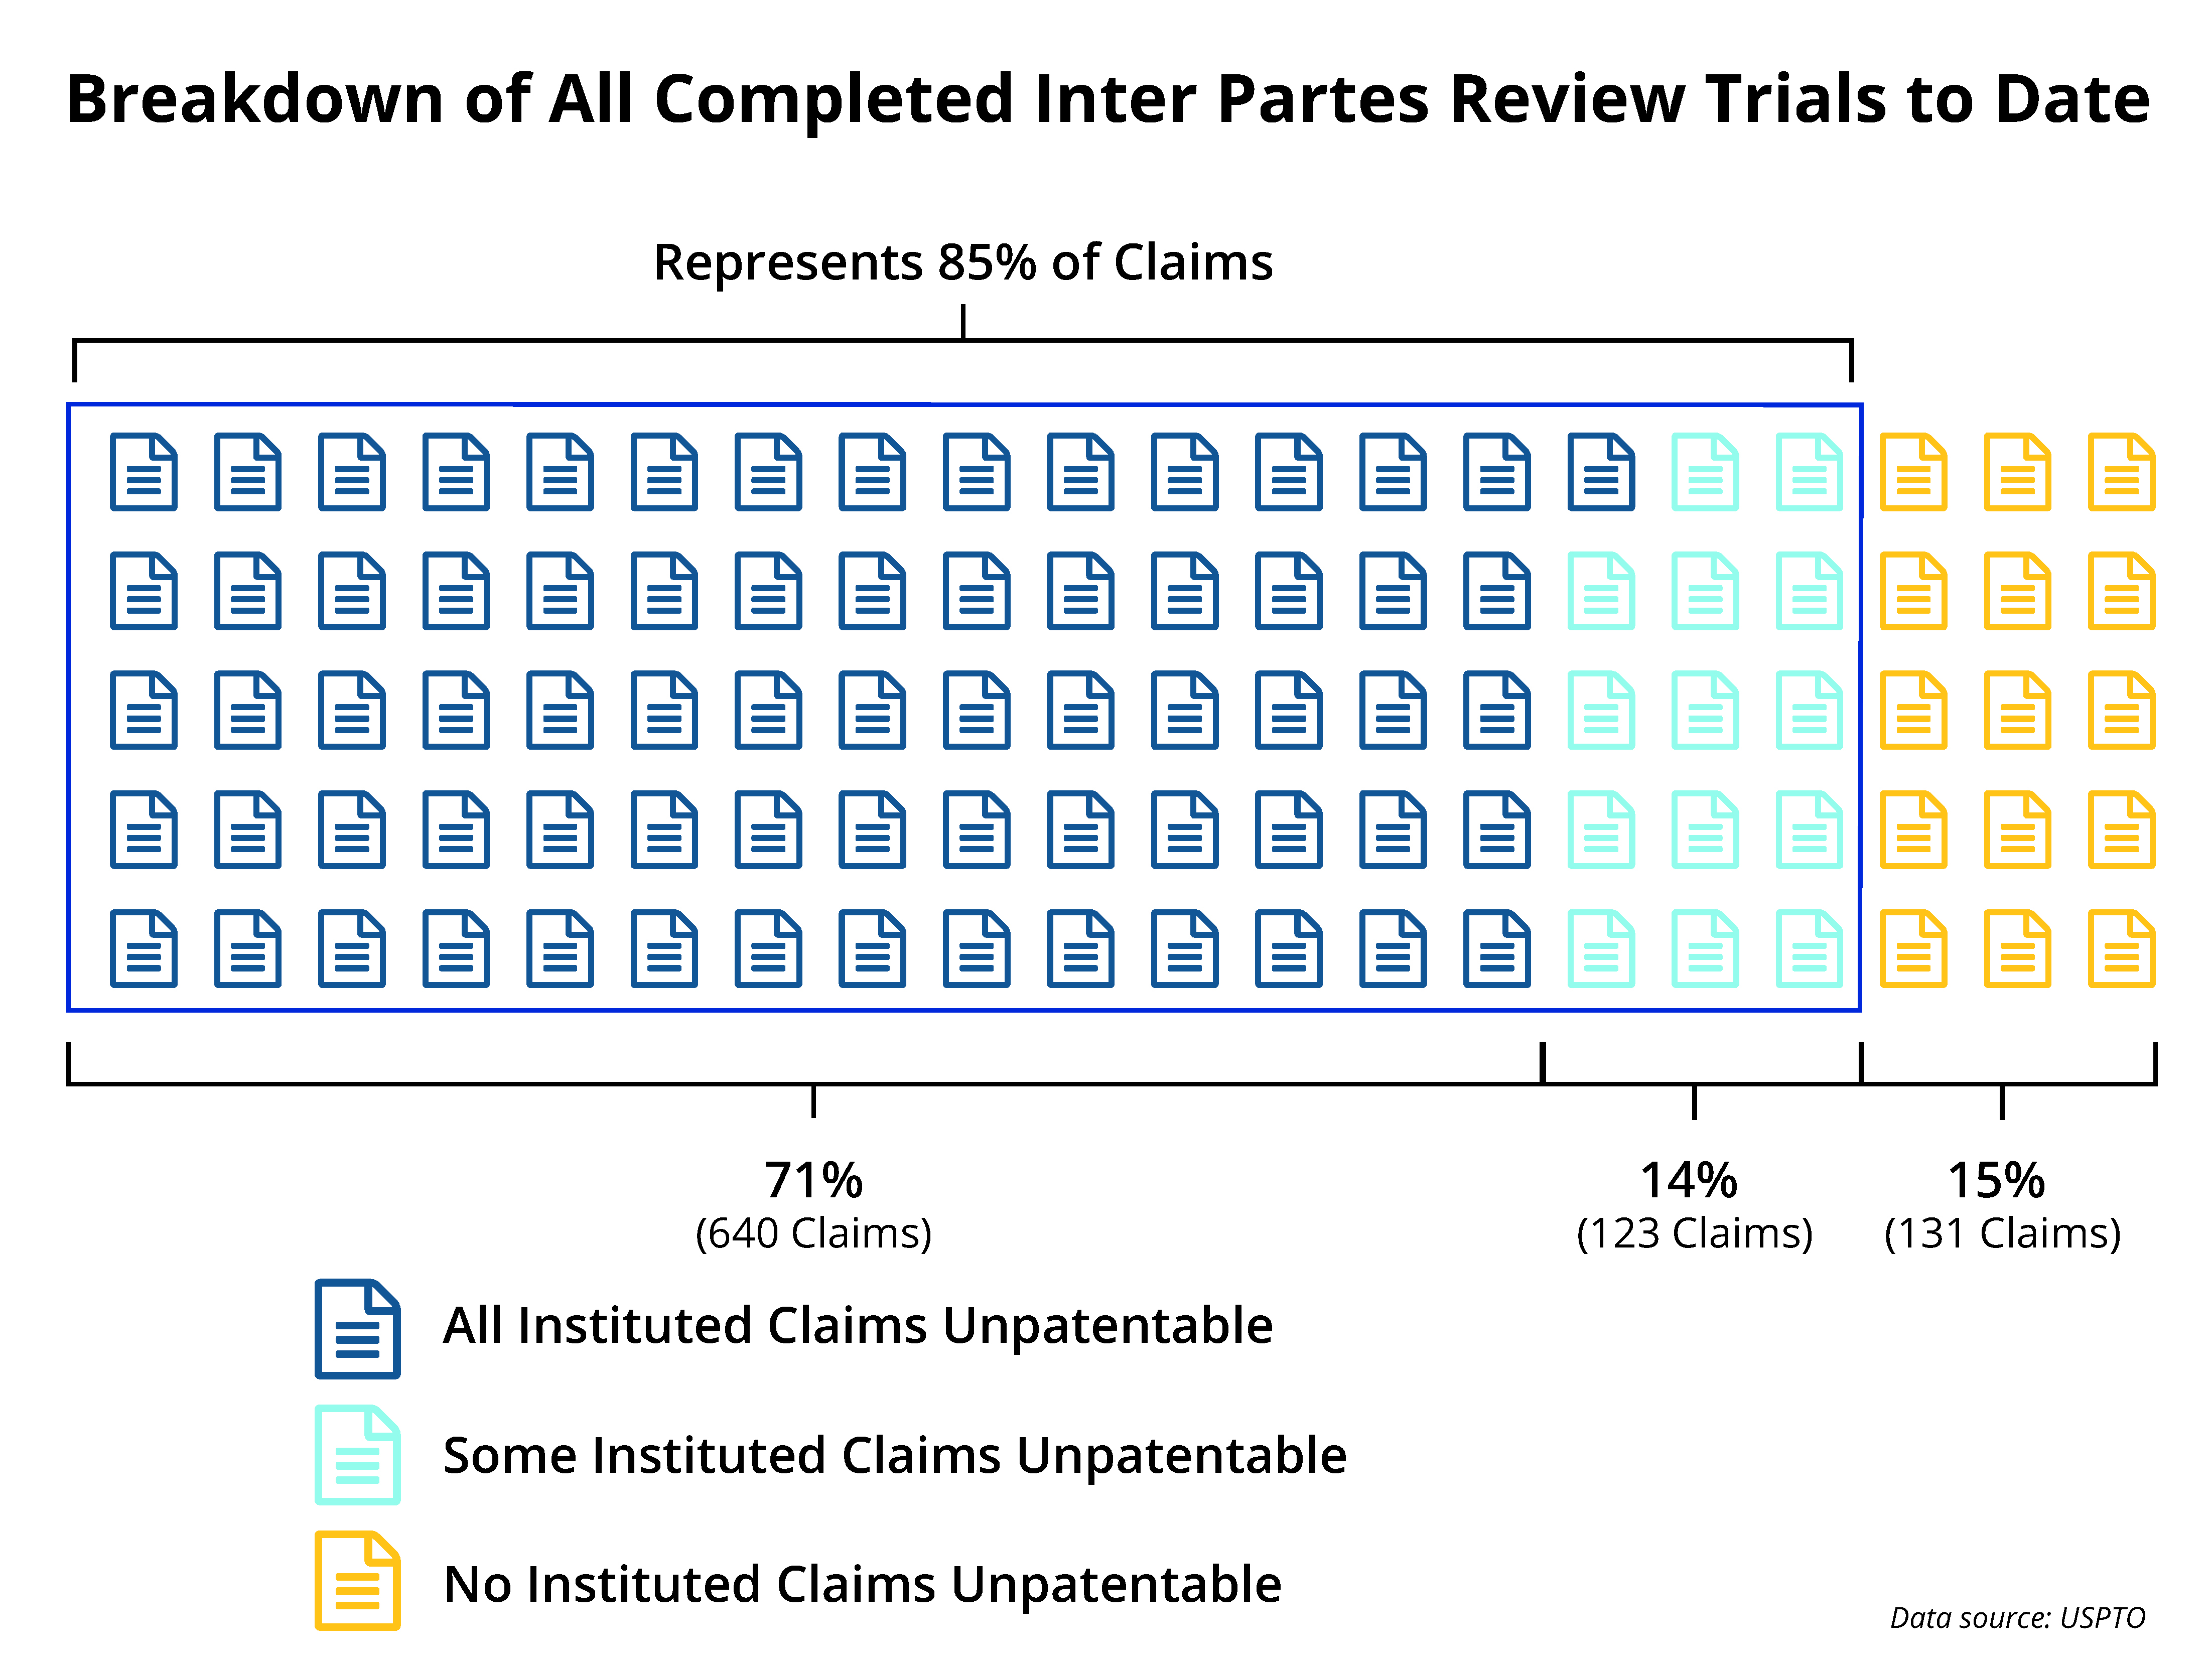 detalhamento de todos os ensaios concluídos com revisão por pares até hoje